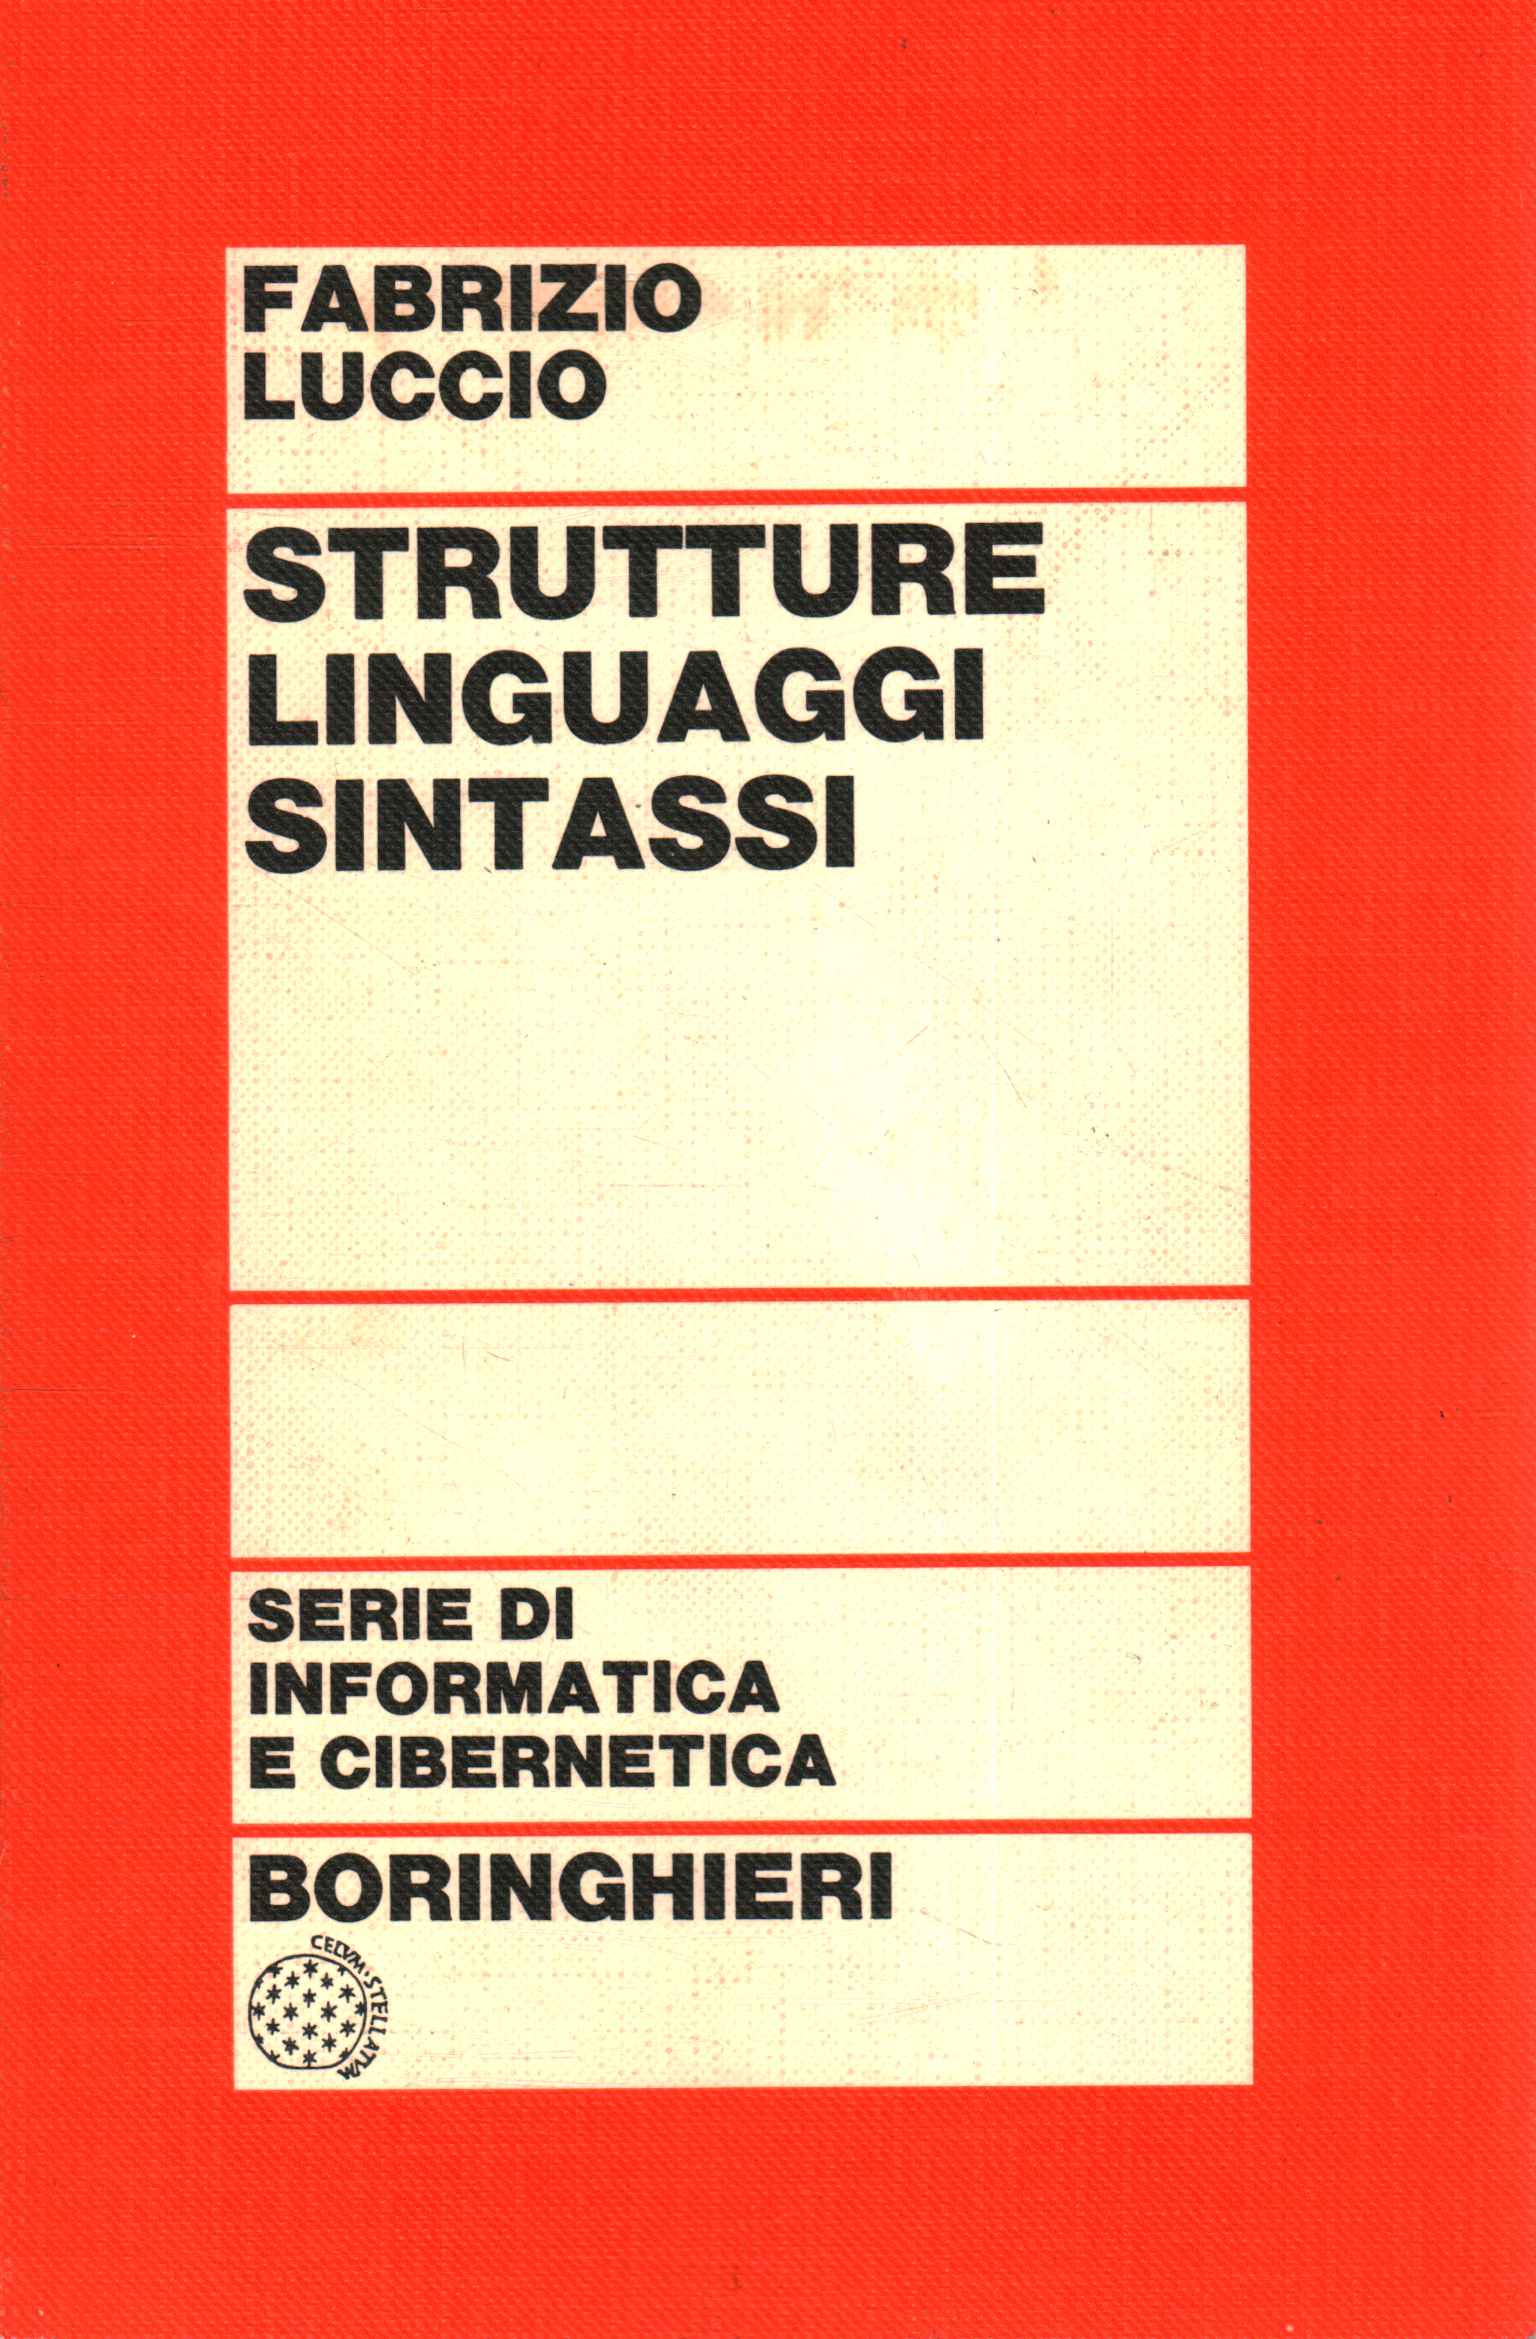 Estructuras del lenguaje de sintaxis